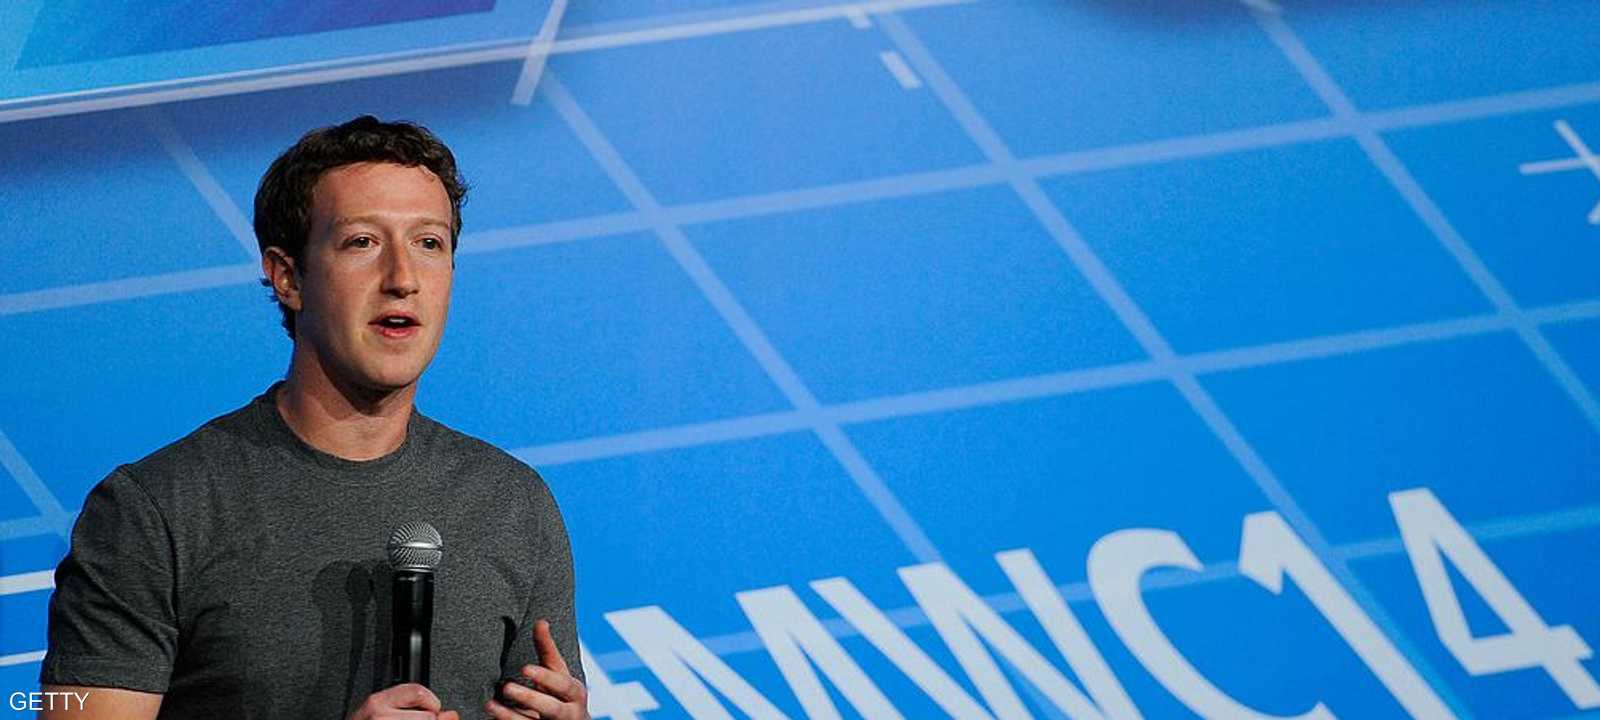 زوكربيرغ أعلن عن بداية جيدة لفيسبوك هذا العام